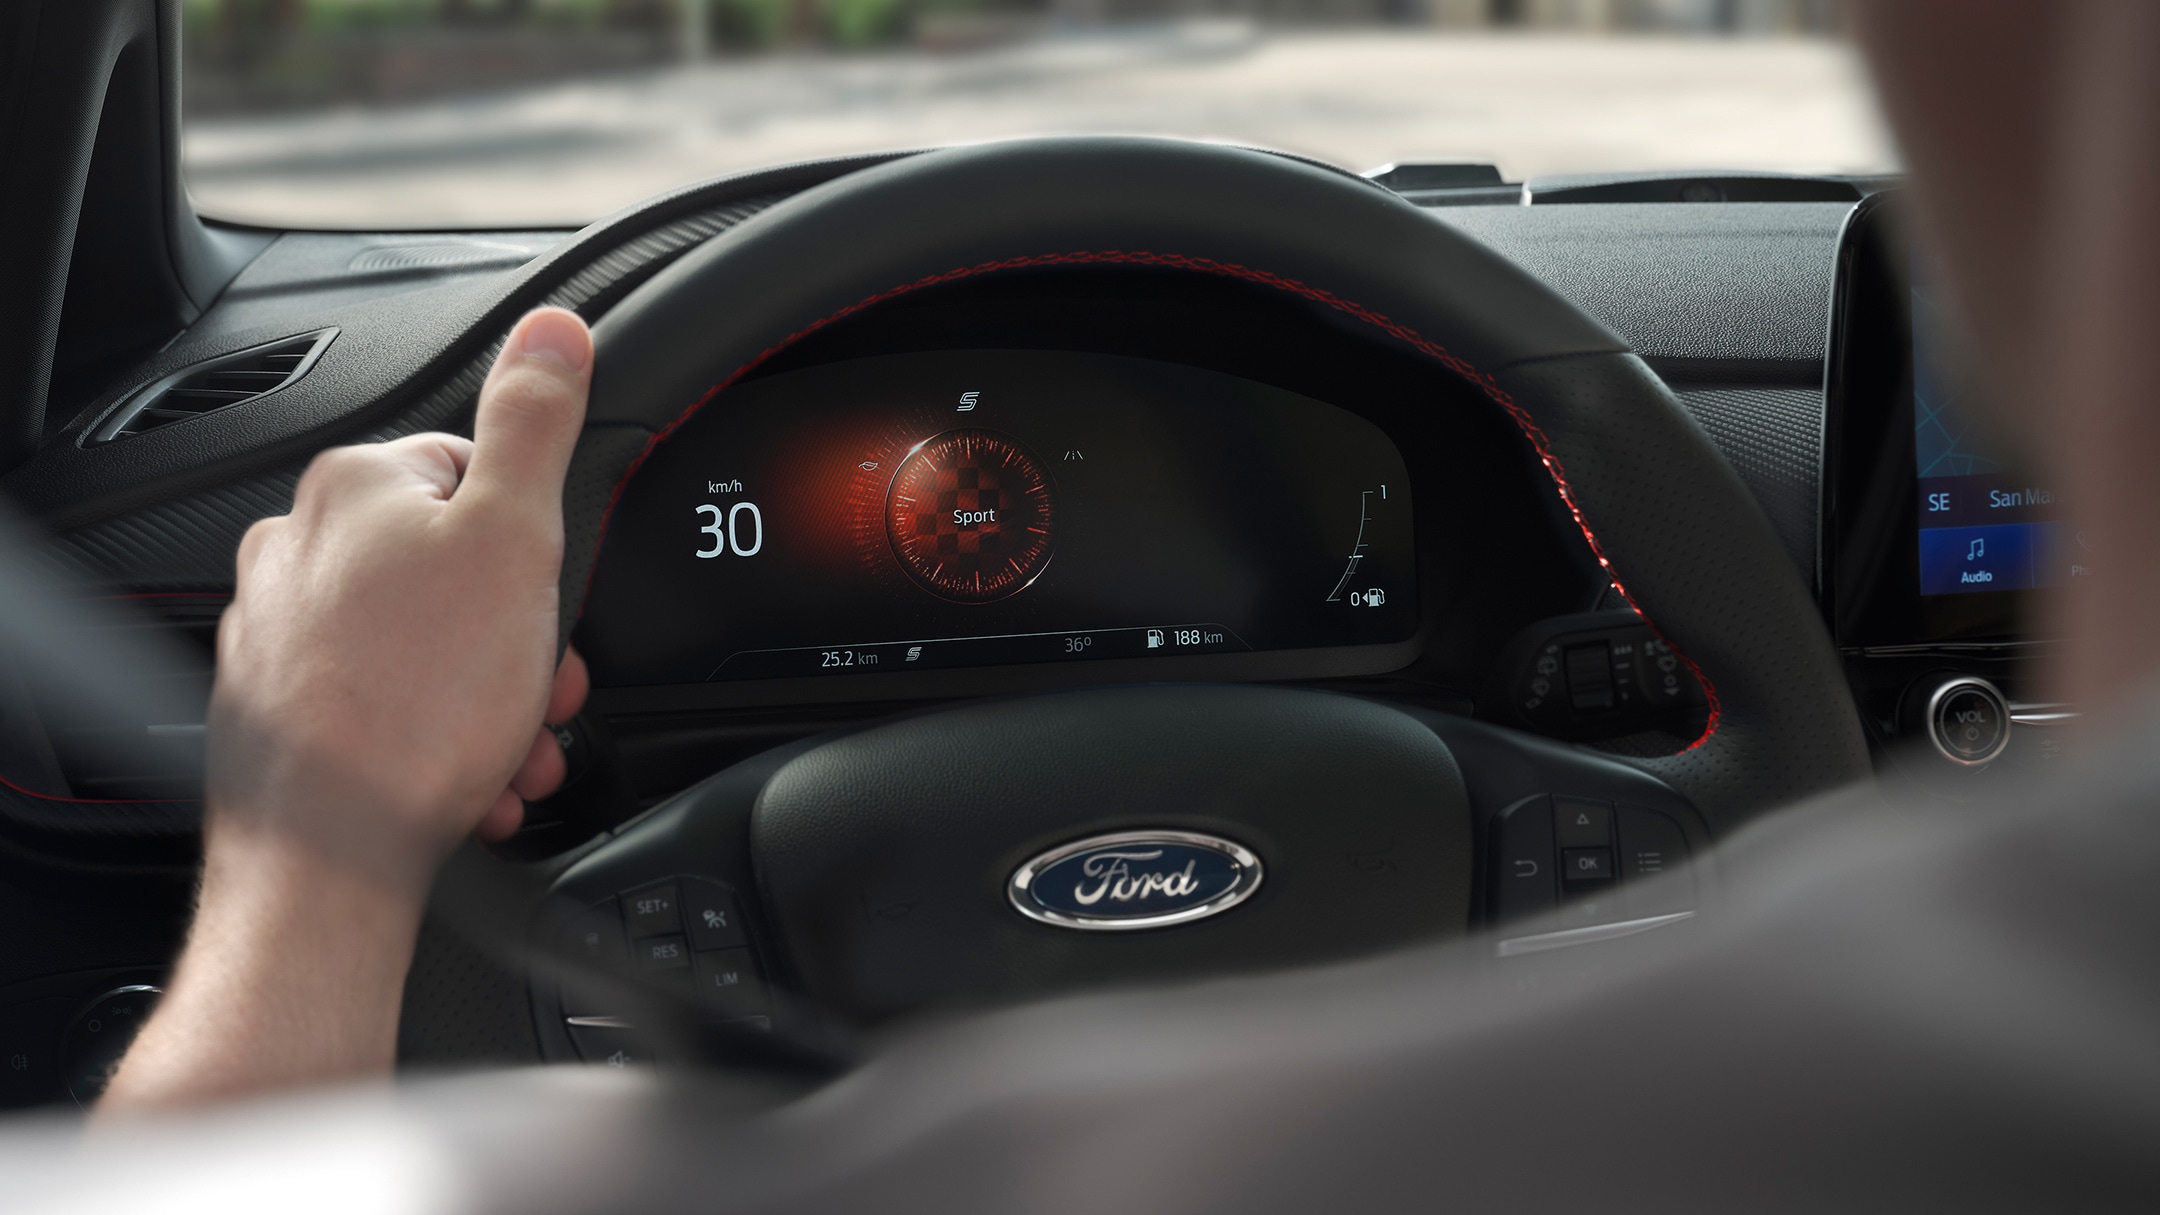 Ford Fiesta ST. Vue intérieure avec volant et tableau de bord numérique.